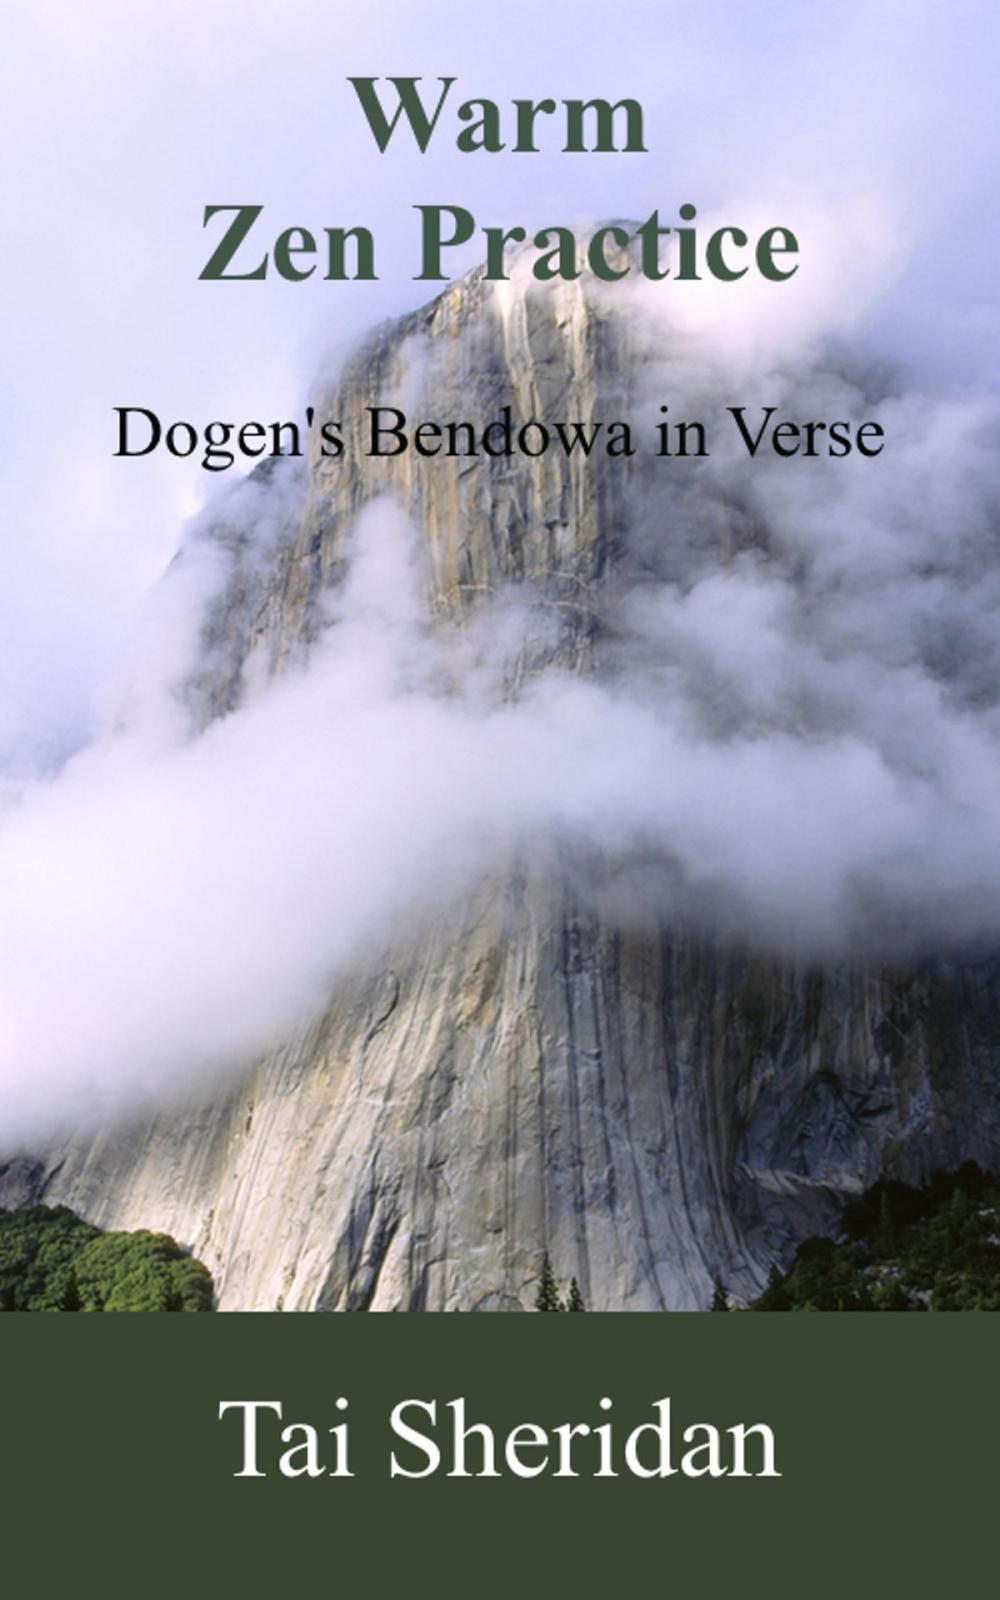 Big bigCover of Warm Zen Practice: A poetic version of Dogen's Bendowa